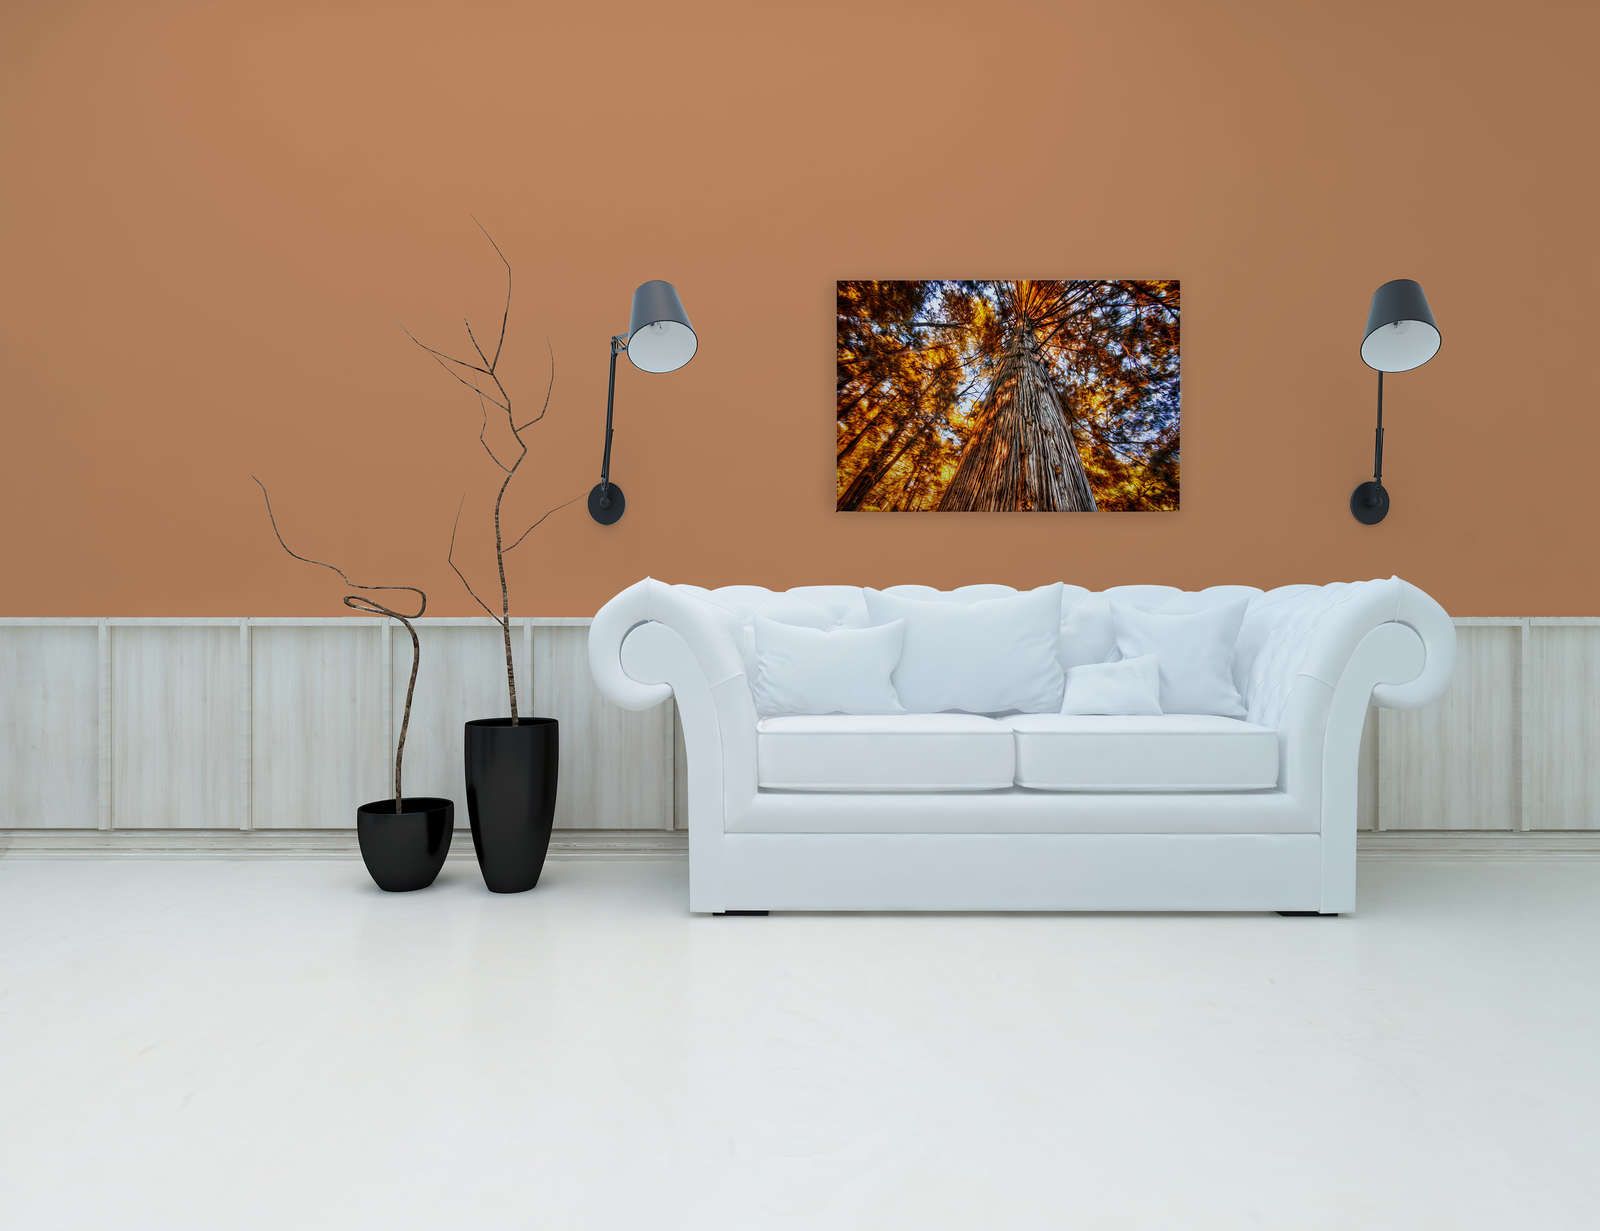             Leinwandbild Blick in die Baumkrone in glühenden Farben – 0,90 m x 0,60 m
        